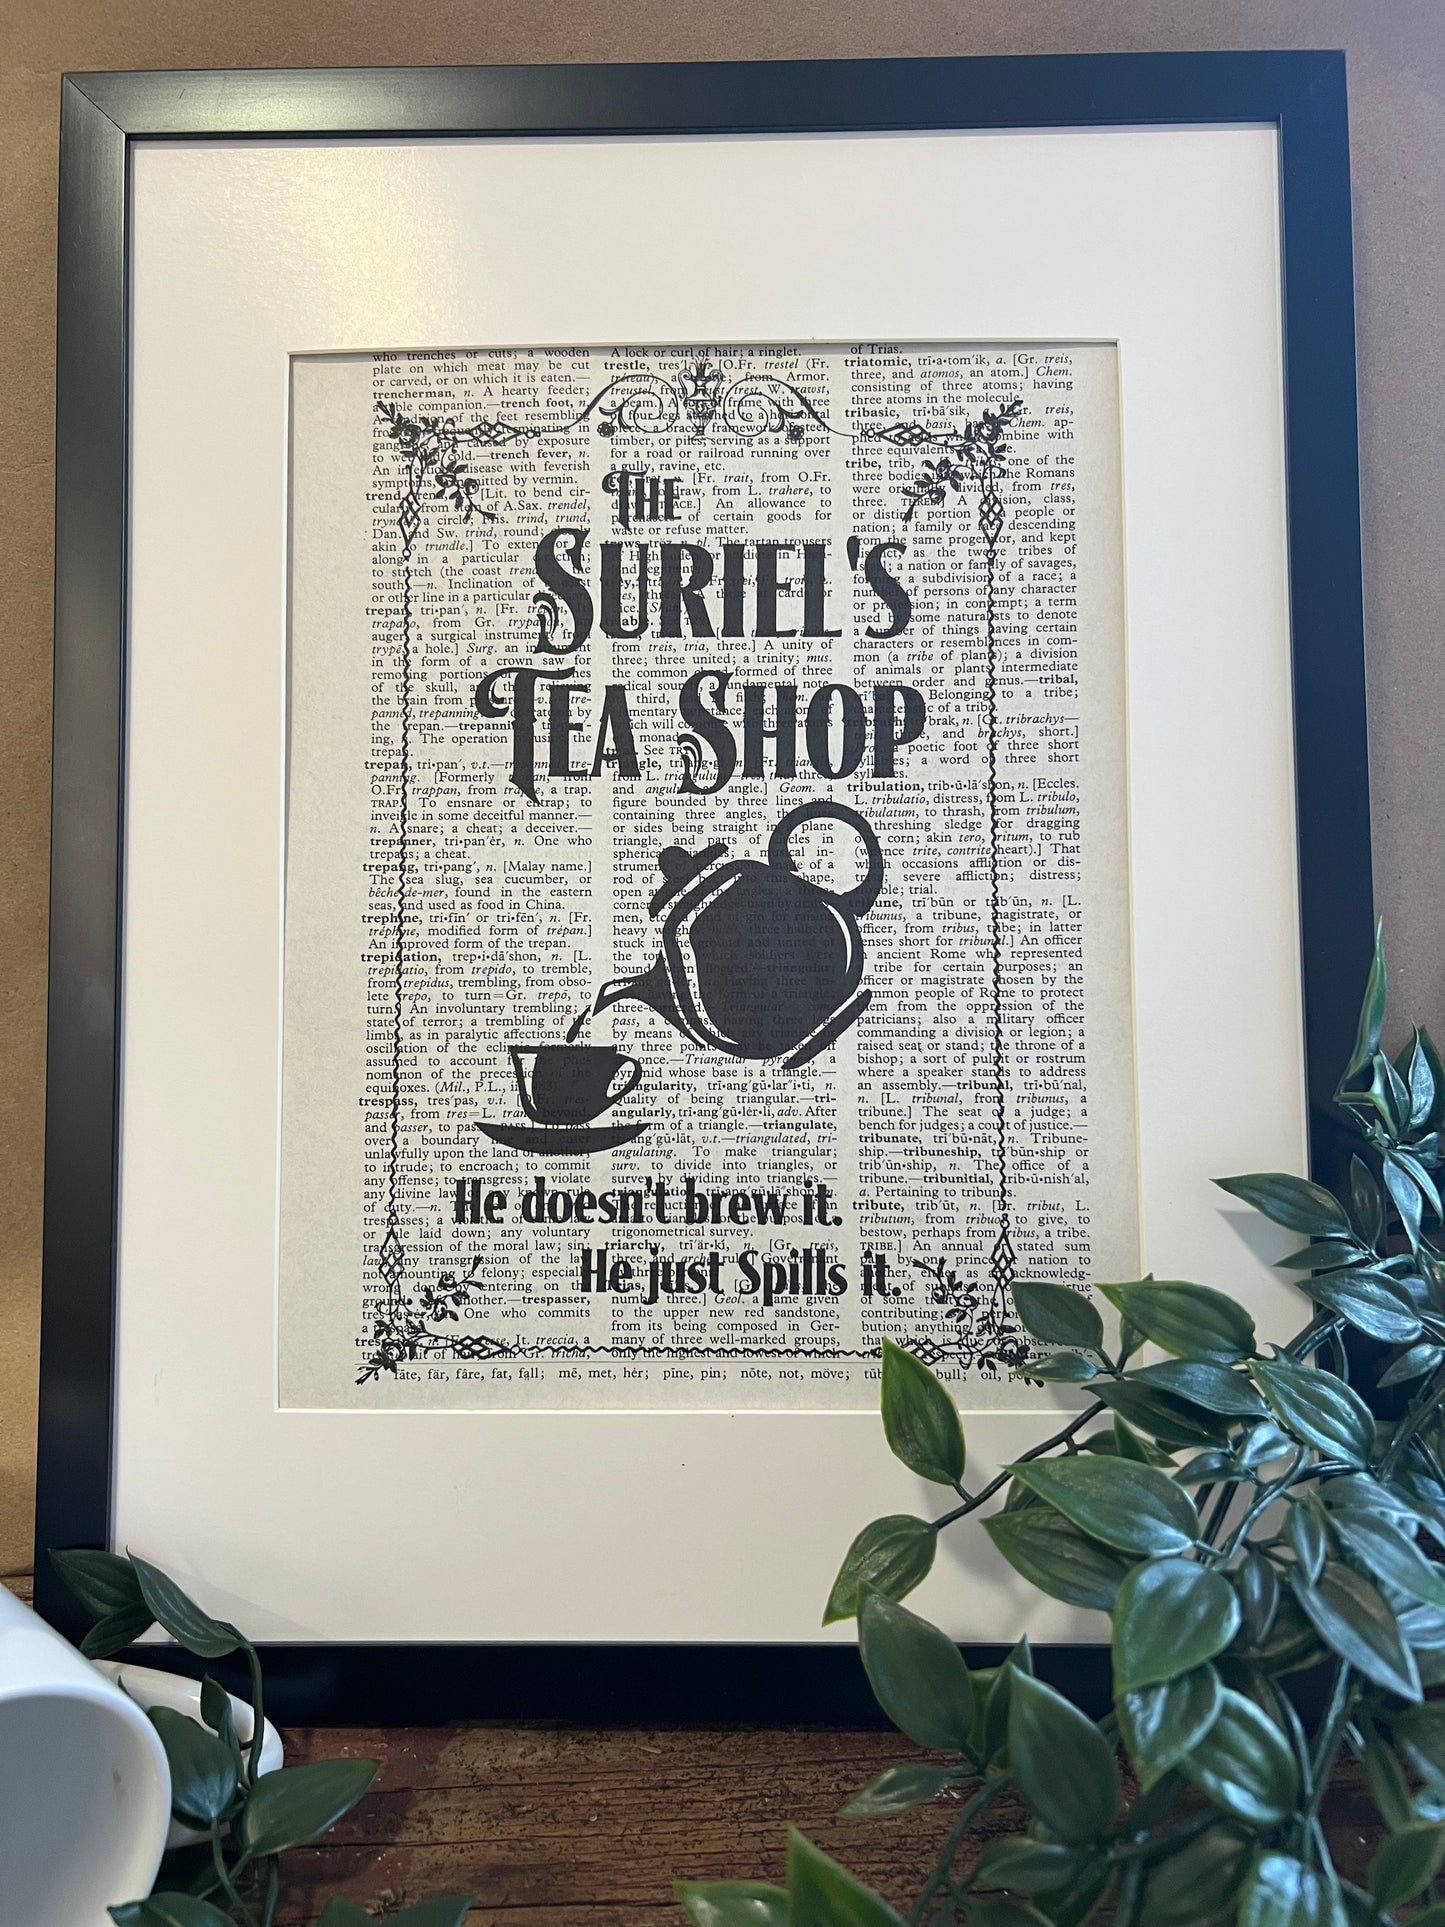 The Suriel’s Tea Shop Vintage Dictionary Print